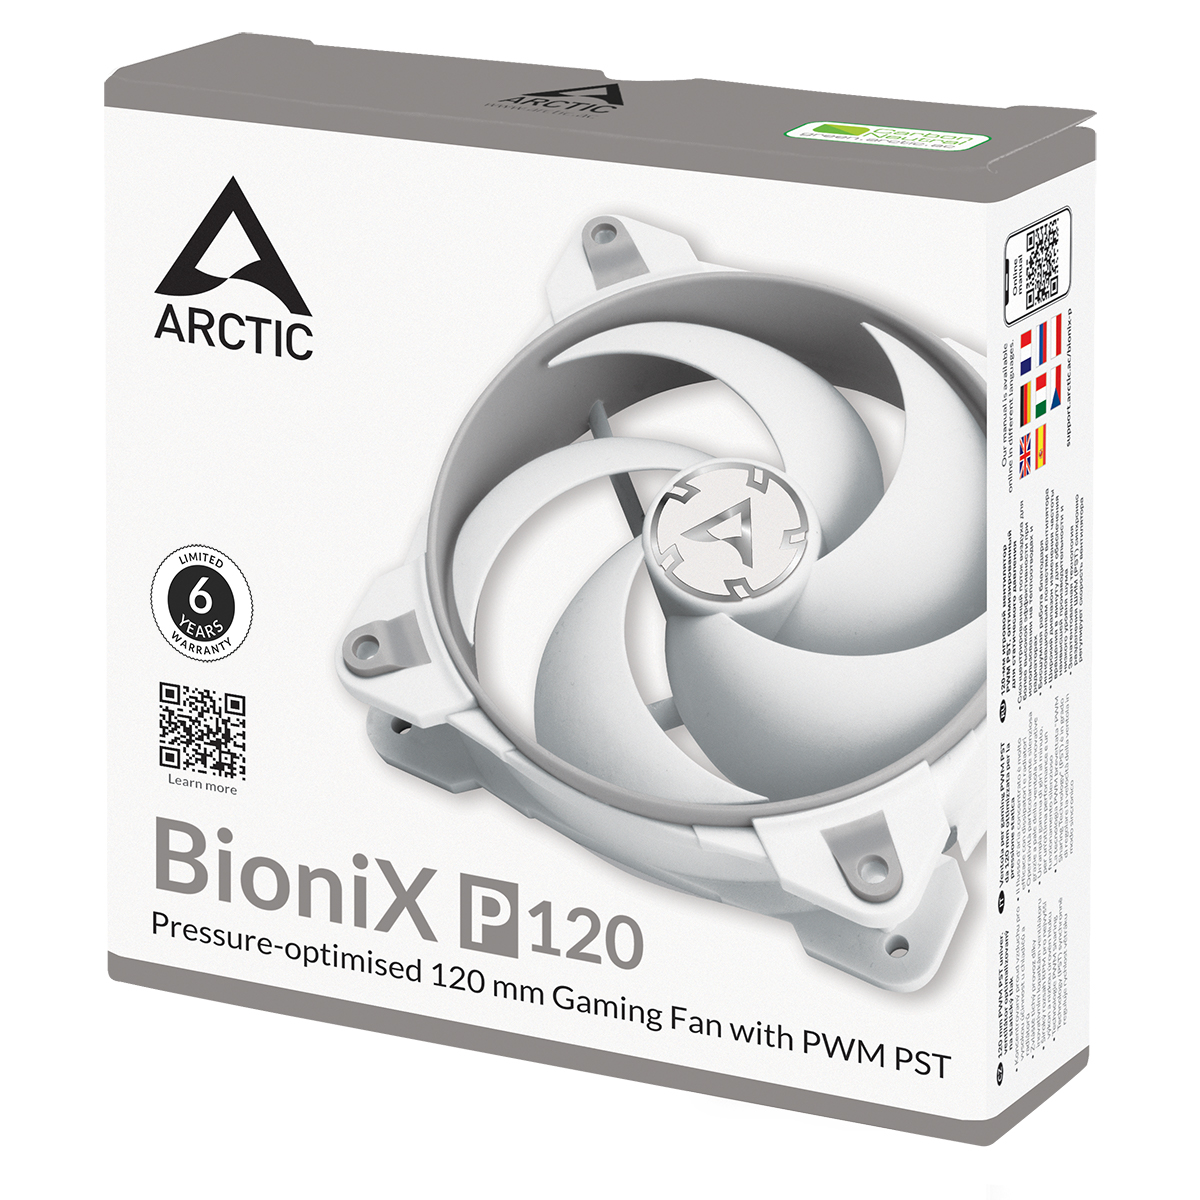 BioniX P120